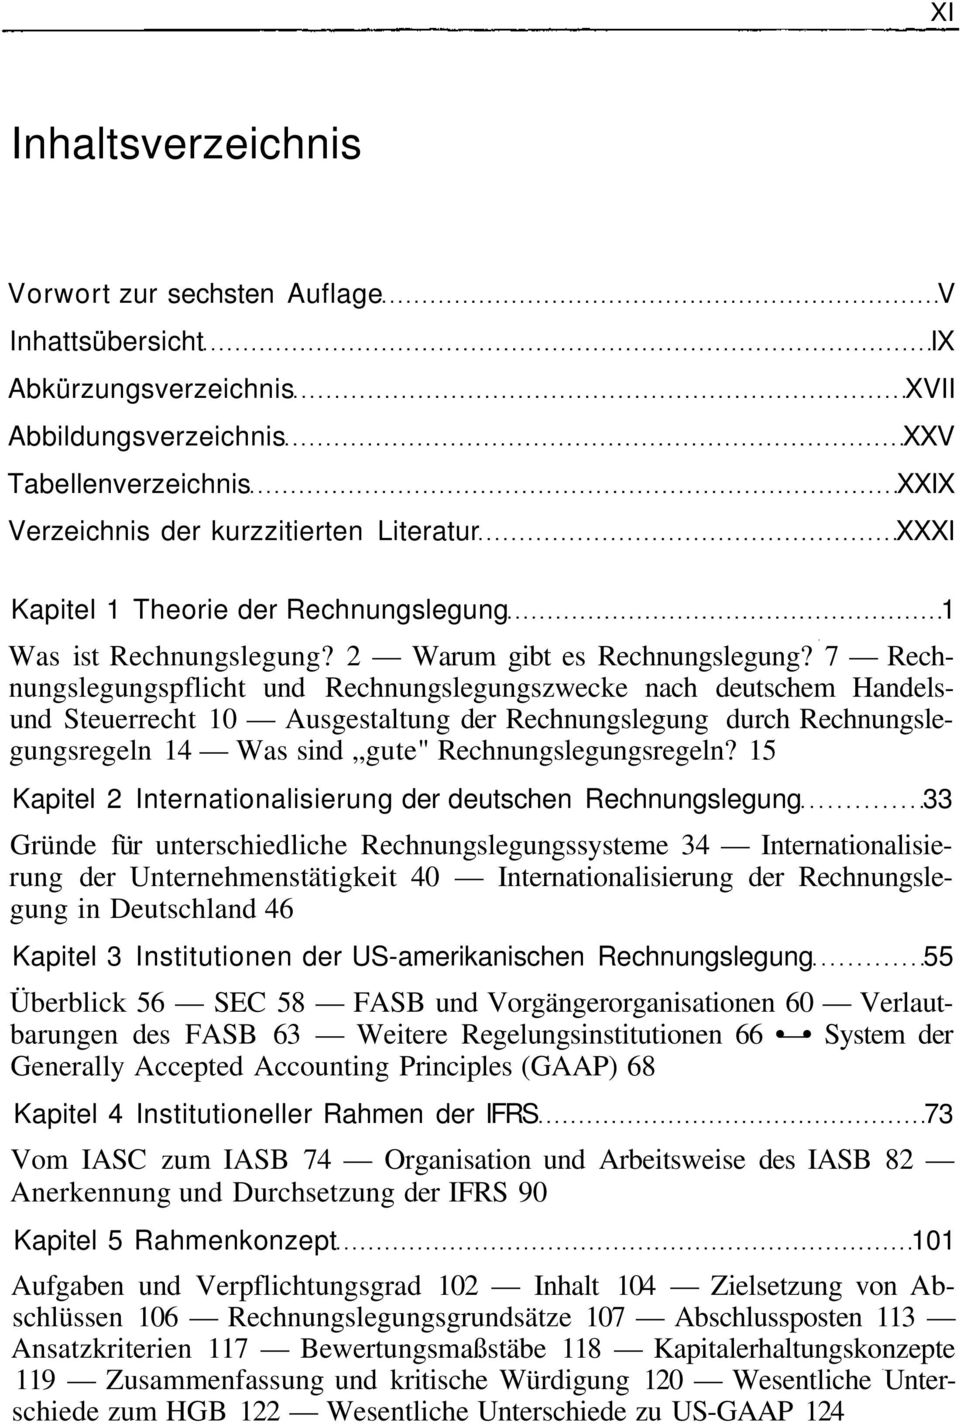 7 Rechnungslegungspflicht und Rechnungslegungszwecke nach deutschem Handelsund Steuerrecht 10 Ausgestaltung der Rechnungslegung durch Rechnungslegungsregeln 14 Was sind gute" Rechnungslegungsregeln?